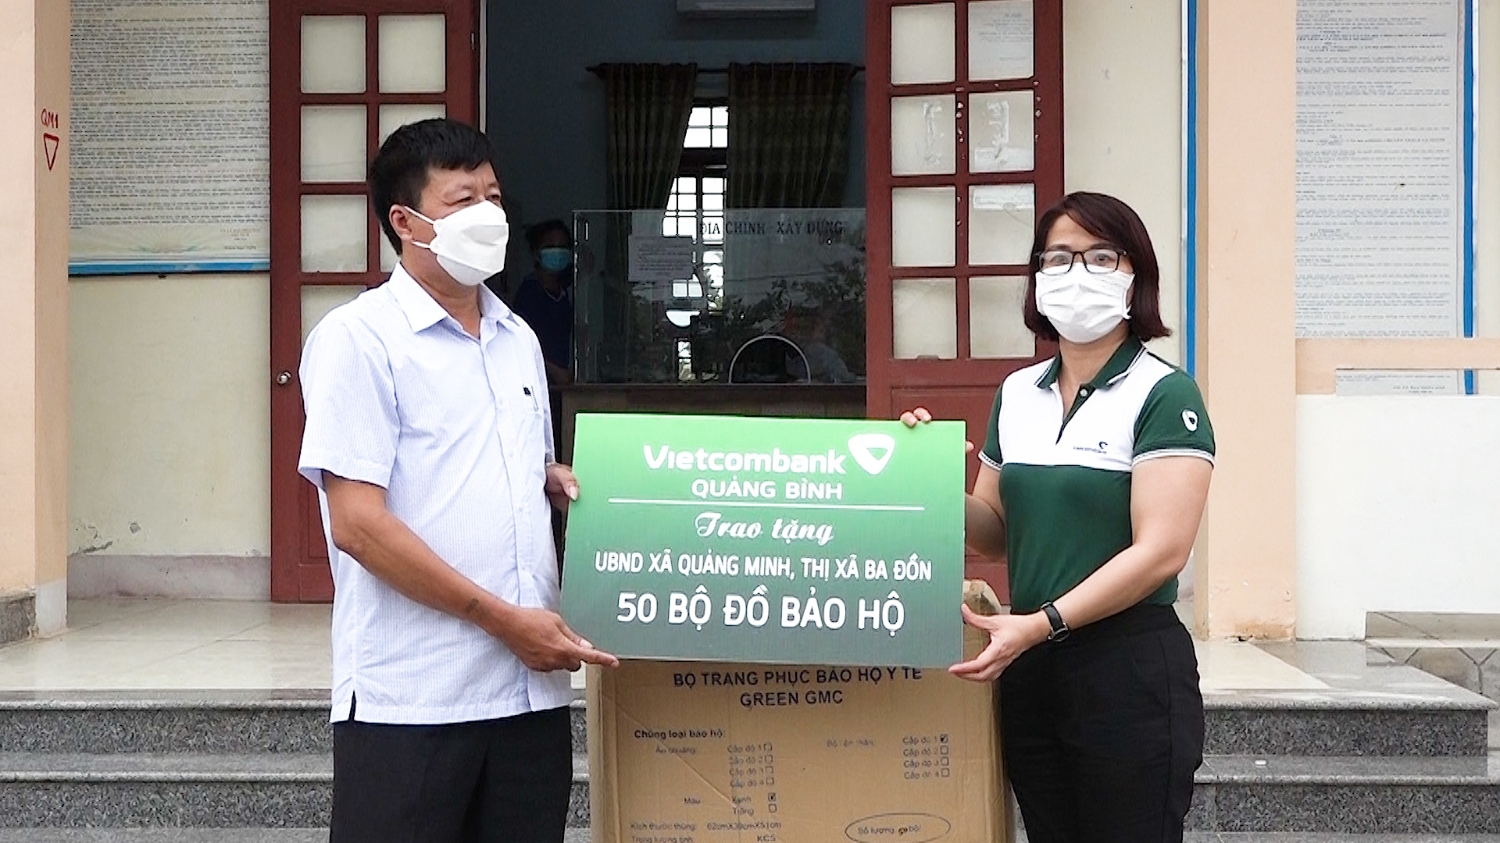 Phòng giao dịch Ngân hàng Vietcombank thị xã Ba Đồn trao tặng áo quần bảo hộ cho UBND xã Quảng Minh